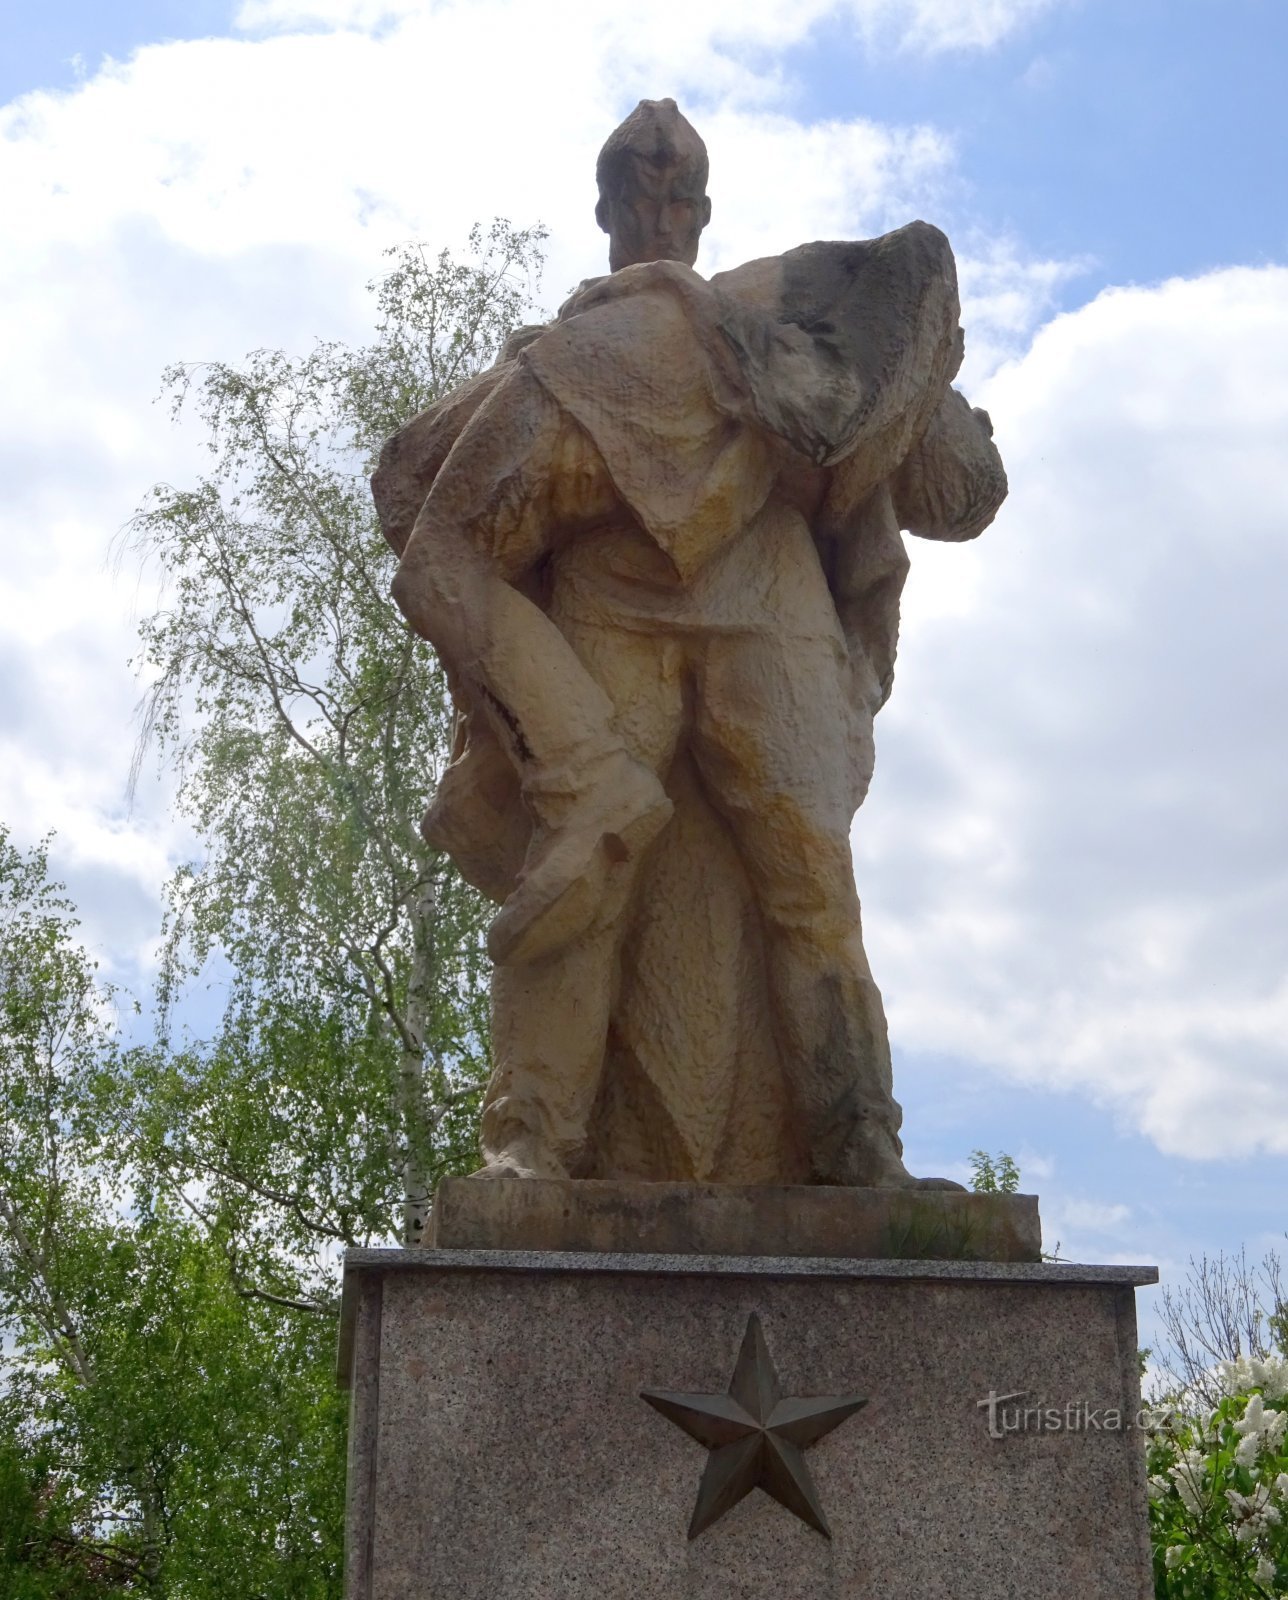 Klimkovice - tượng đài II. cuộc chiến tranh thế giới